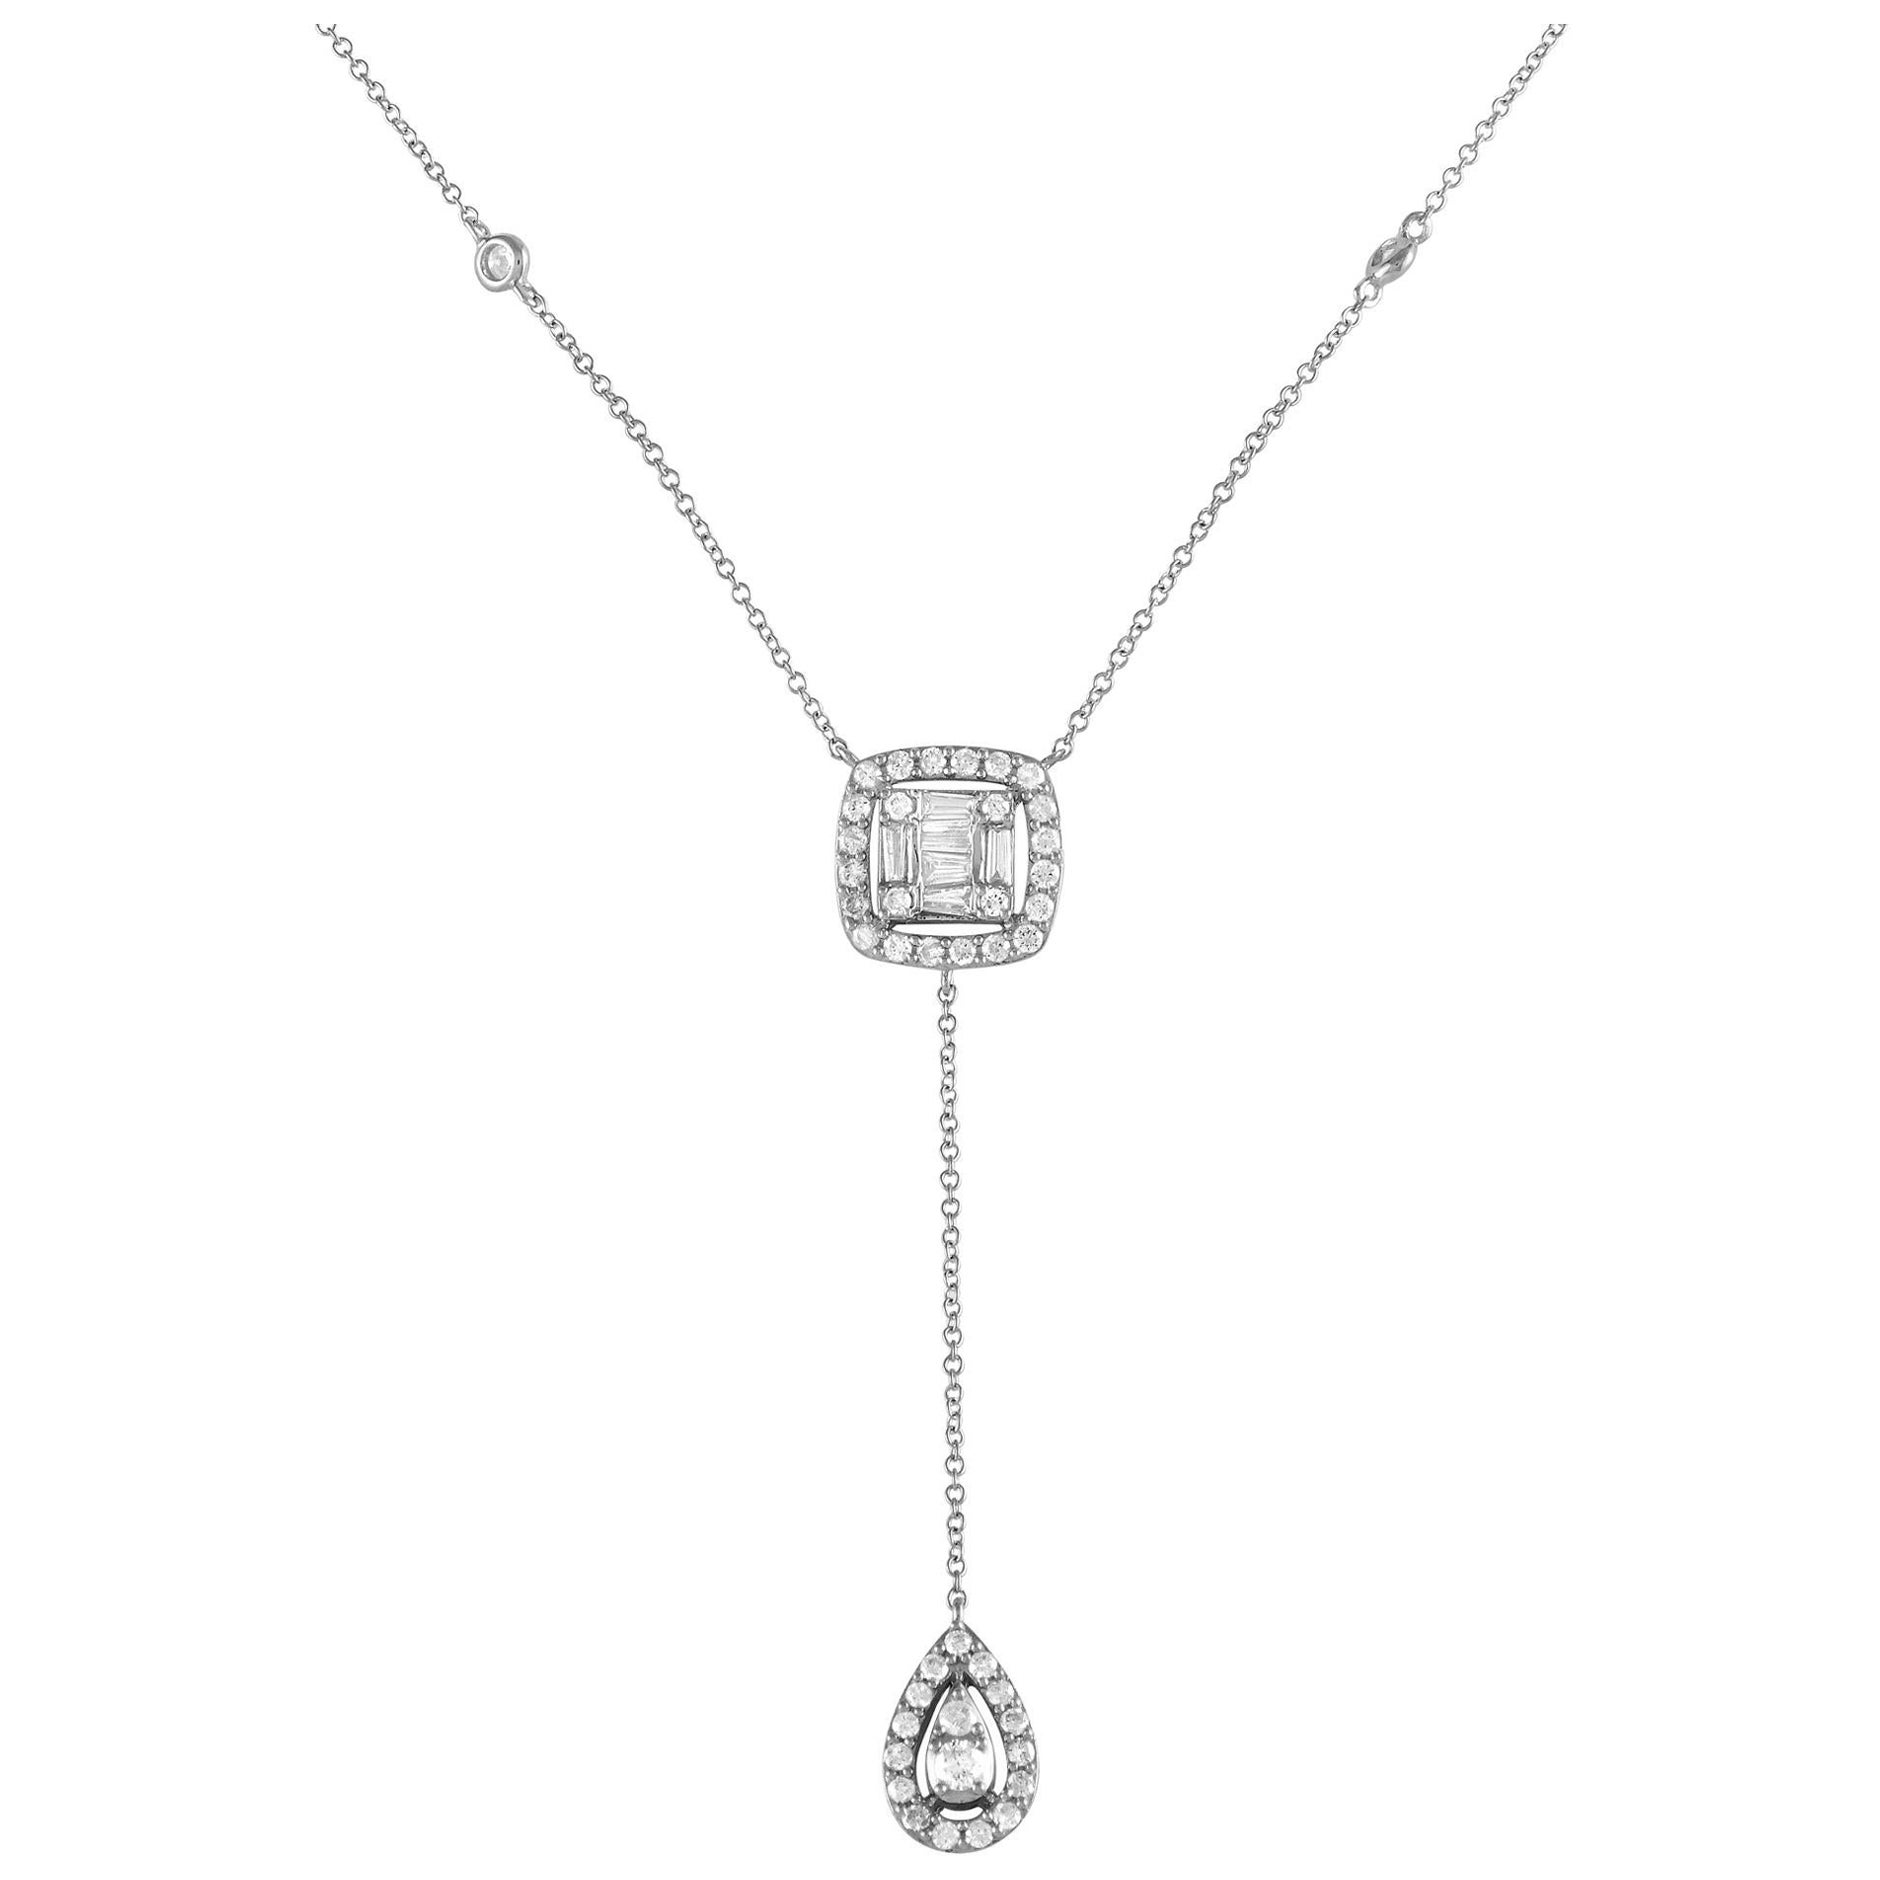 LB Exclusive 14K Weißgold 0,65ct Diamant-Halskette NK013181